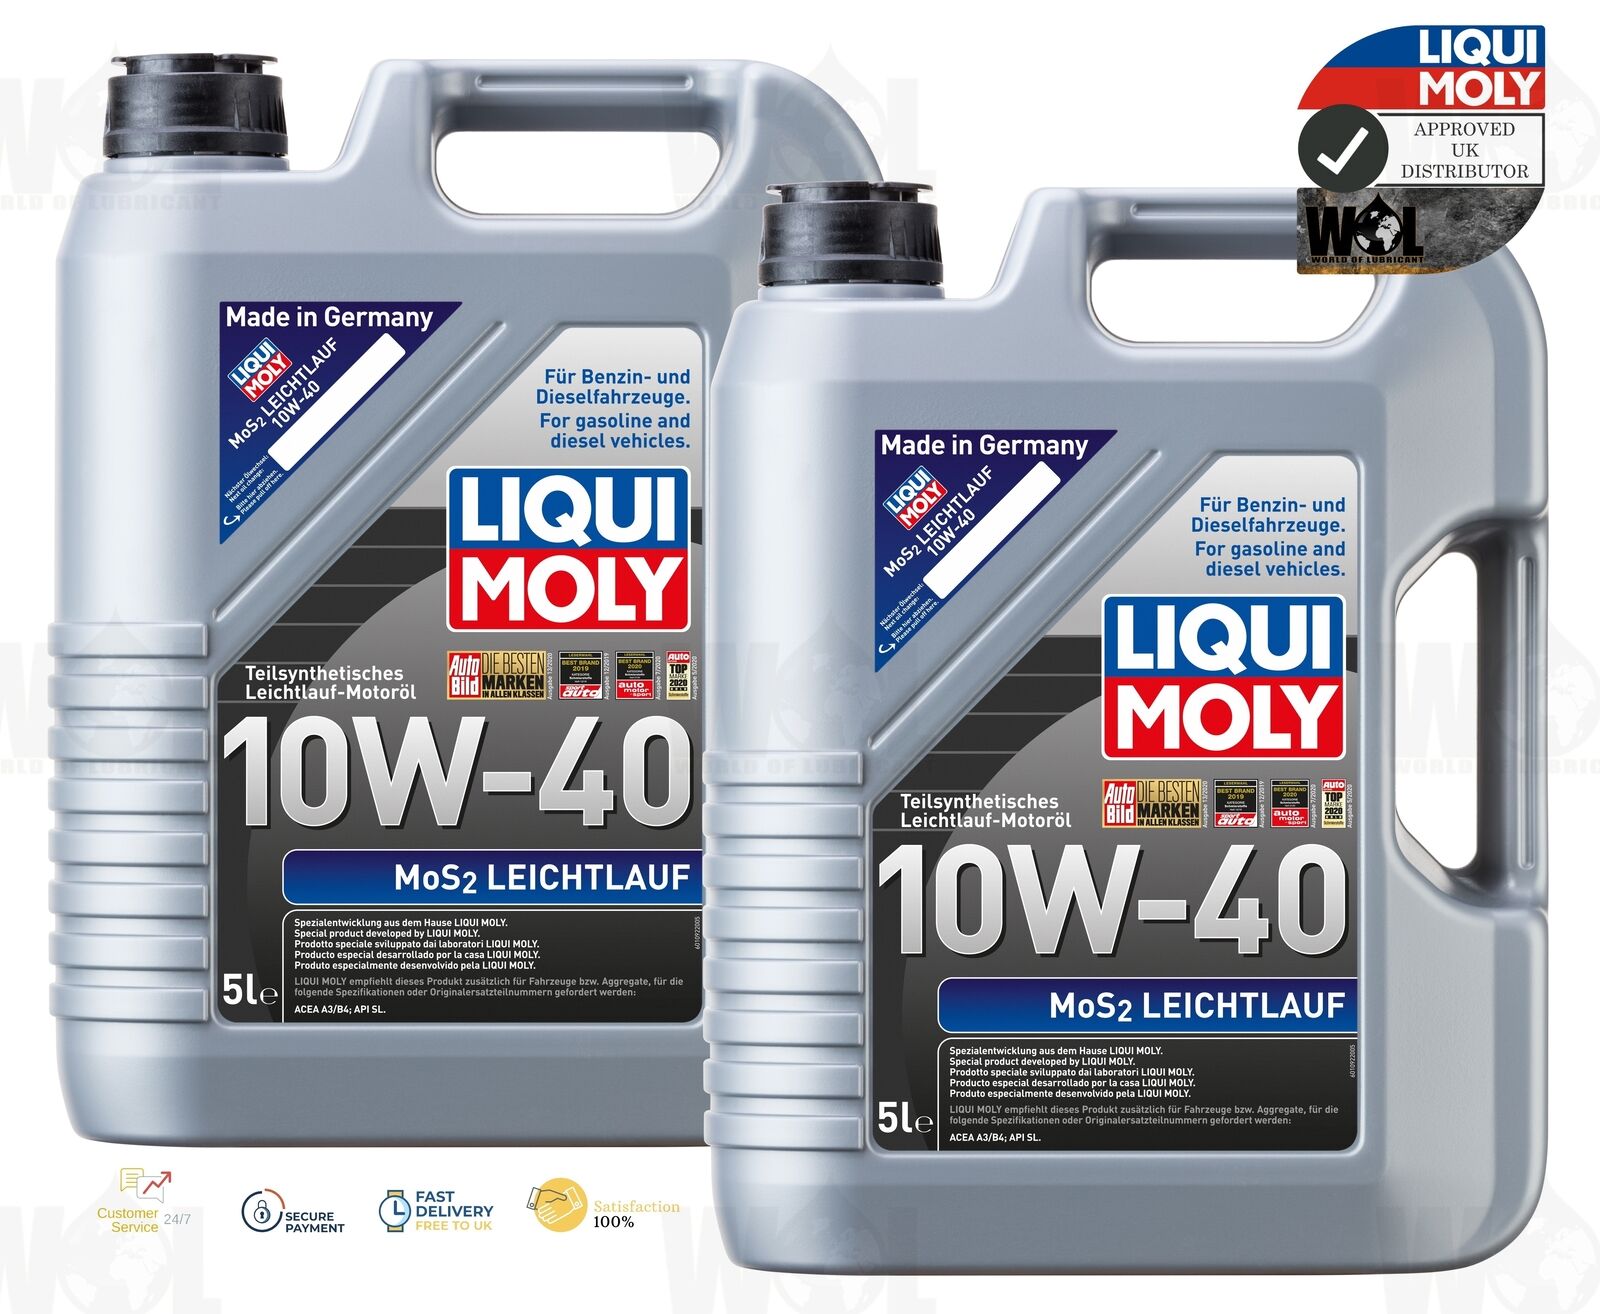 Liqui moly Mos2 10w - 40 semi synthetic